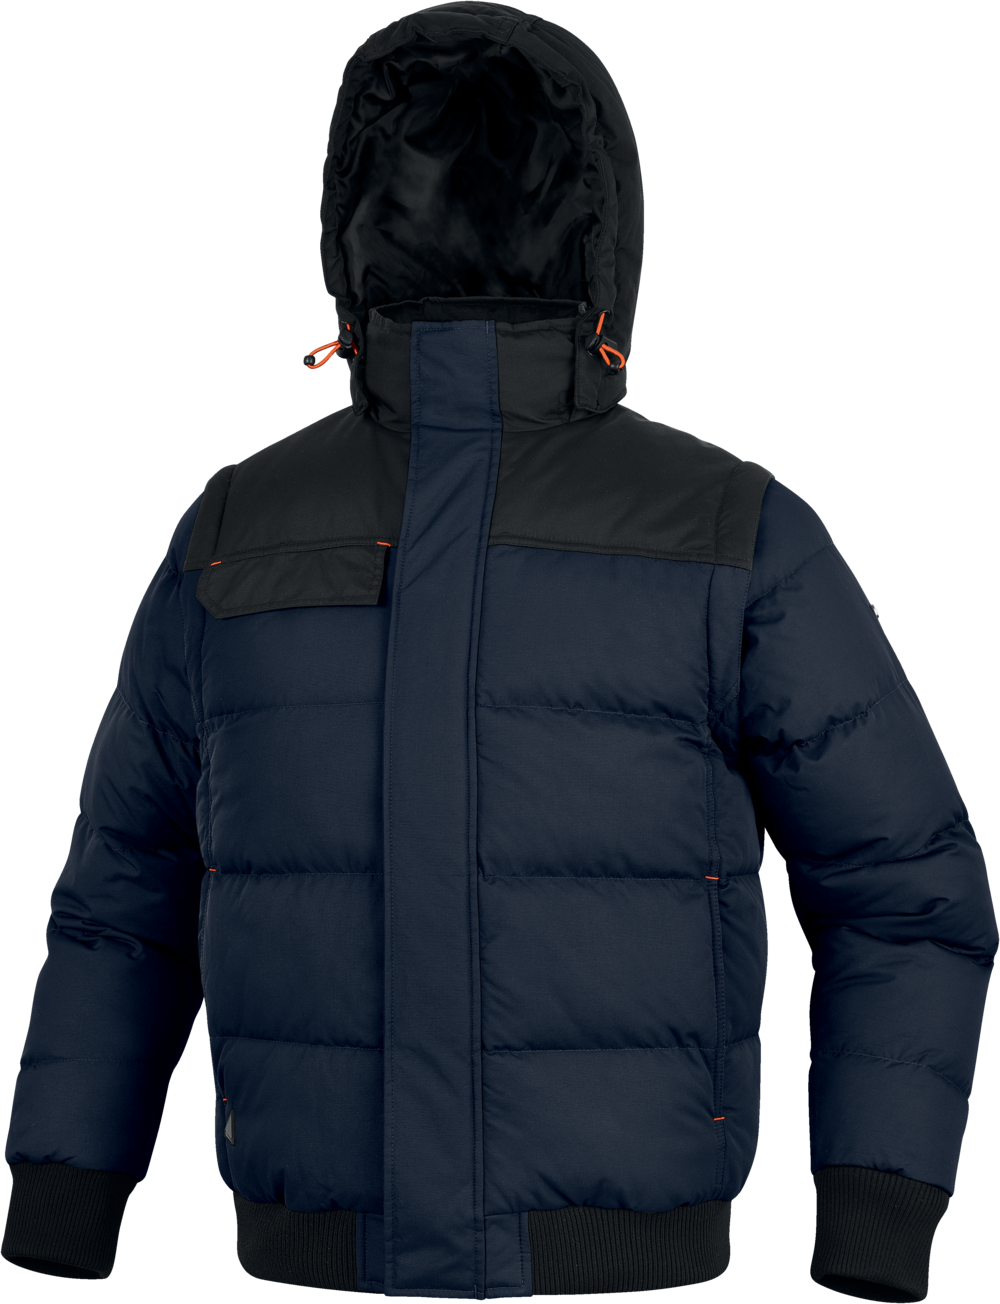 Утеплённая куртка-бомбер RANDERS2 с отстёгивающимися рукавами 2 в 1 демисезонная